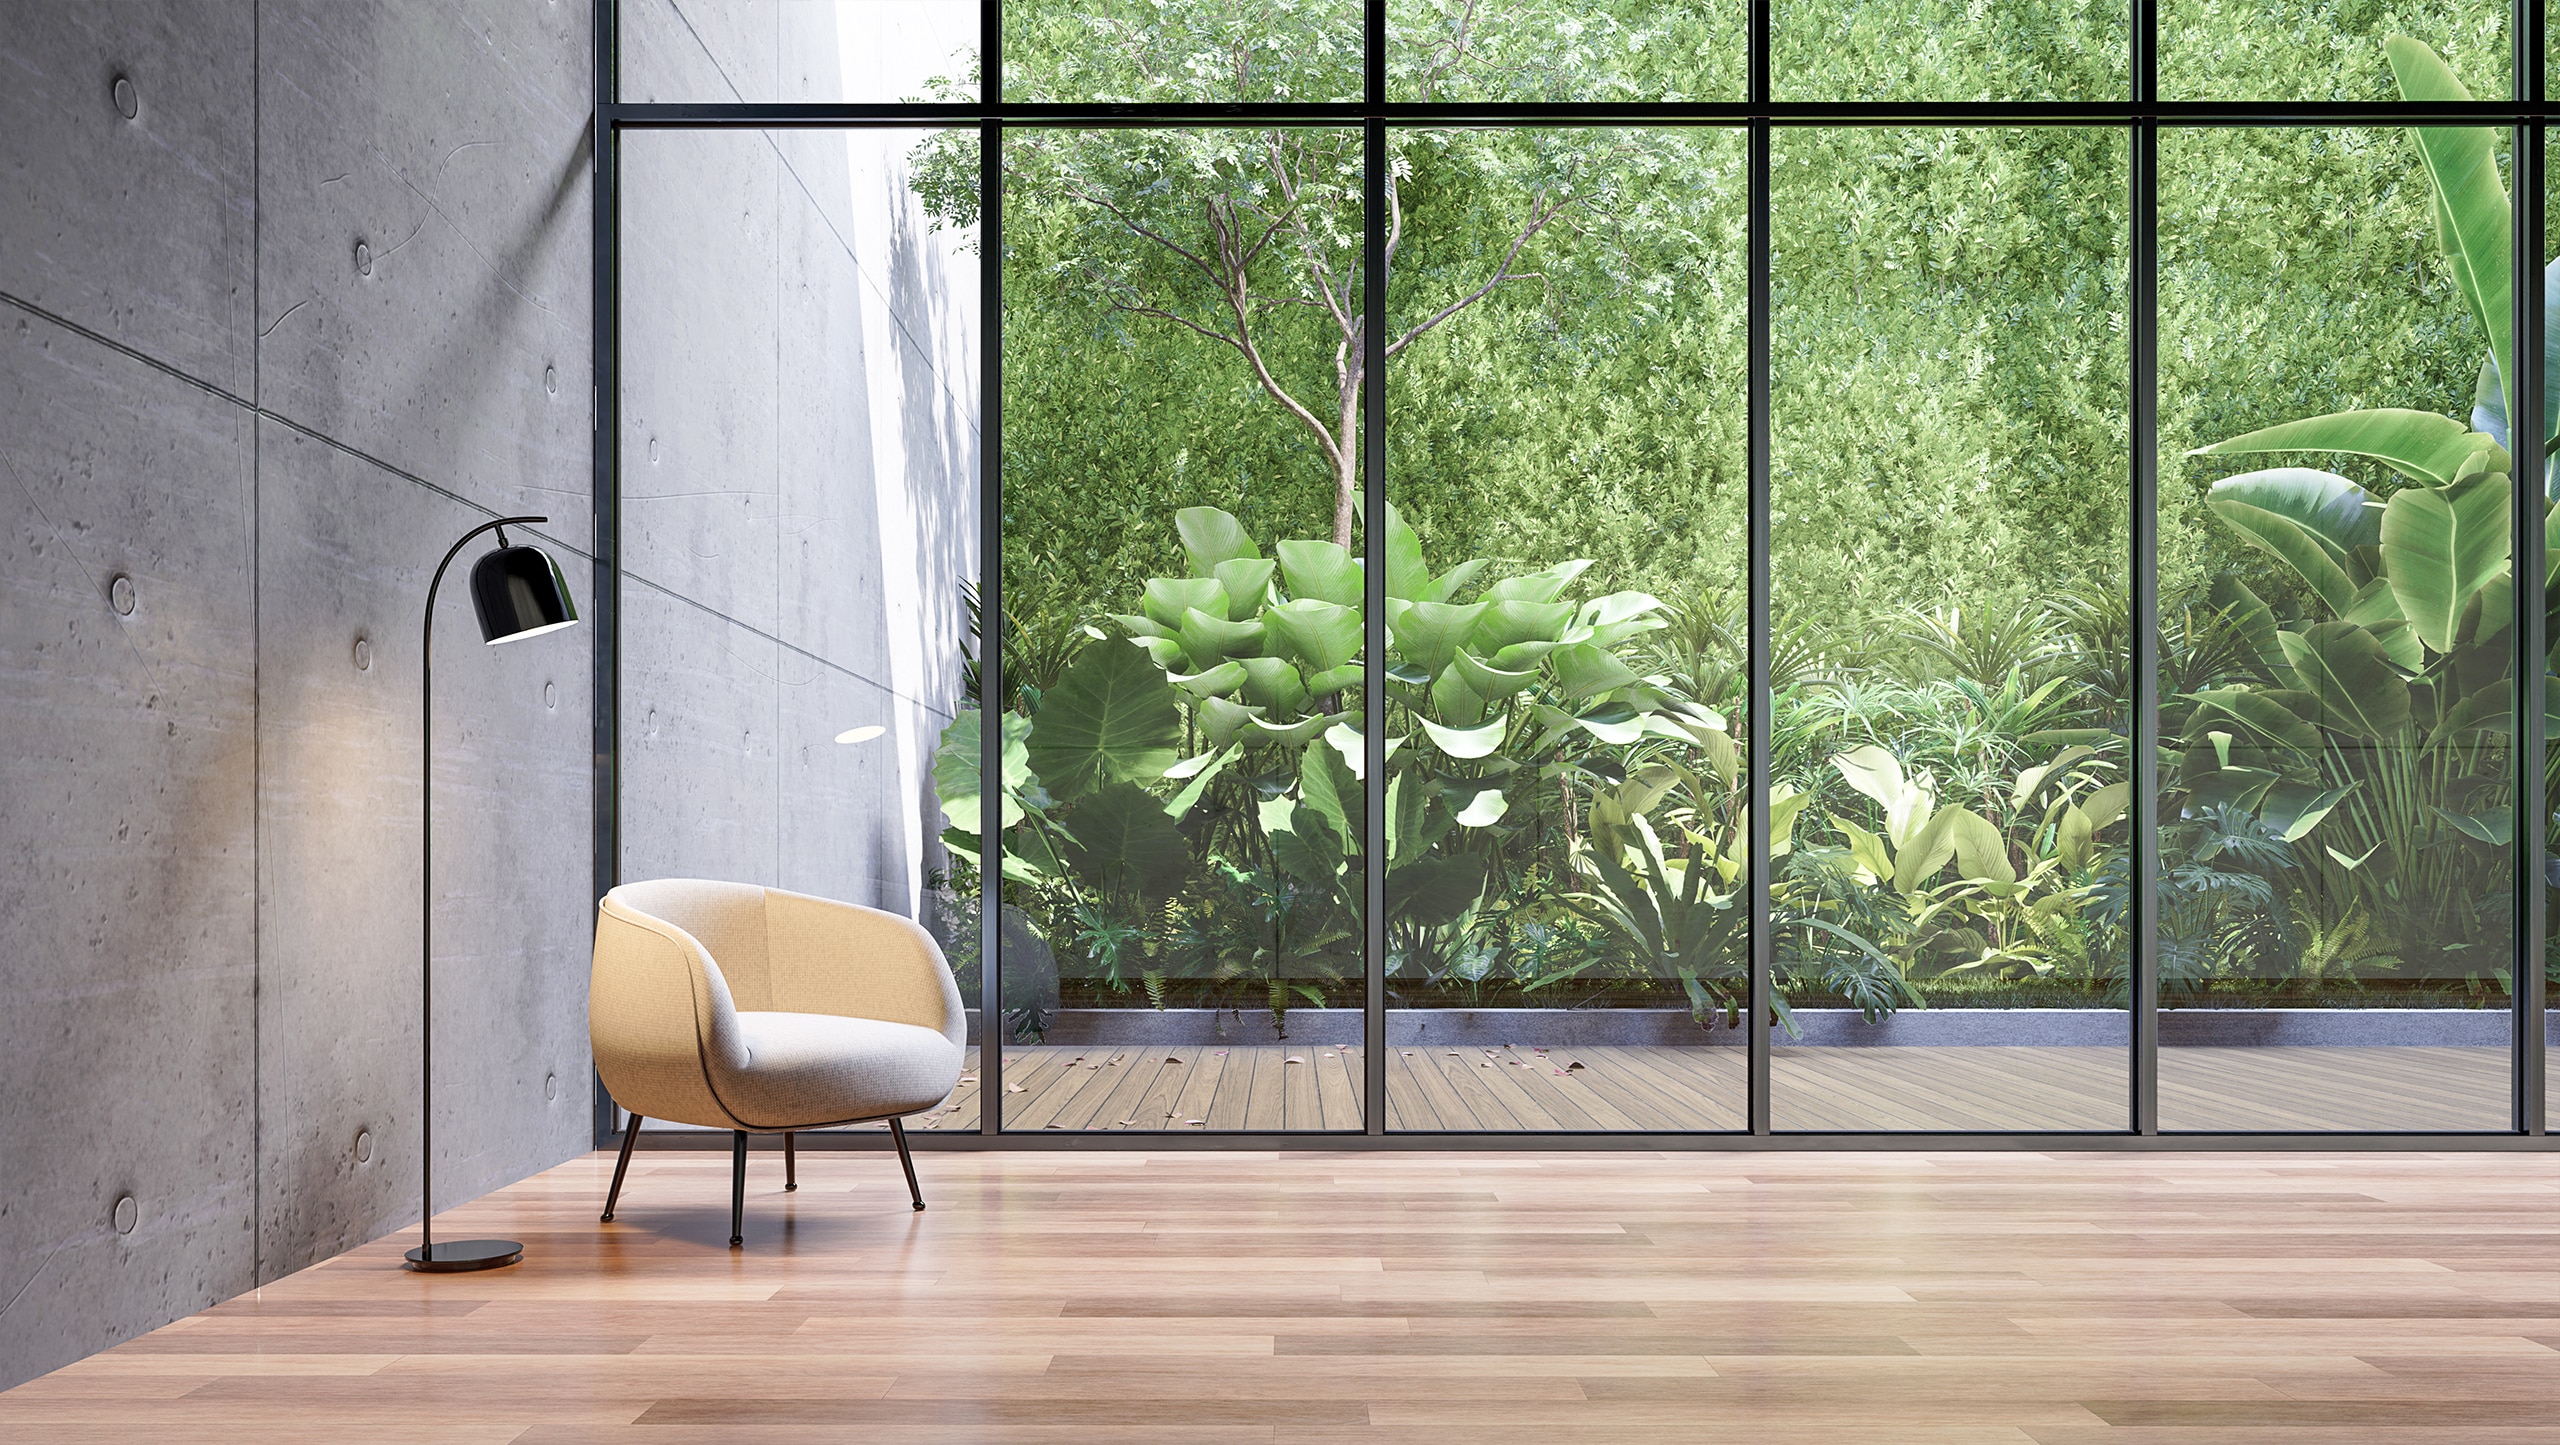 Lichtdurchfluteter Wohnraum mit modernem Wintergarten in hochformatiger Verglasung mit schwarzer Rahmeneinfassung mit Aussicht in den grünen Garten sowie Parkettboden aus Holz.